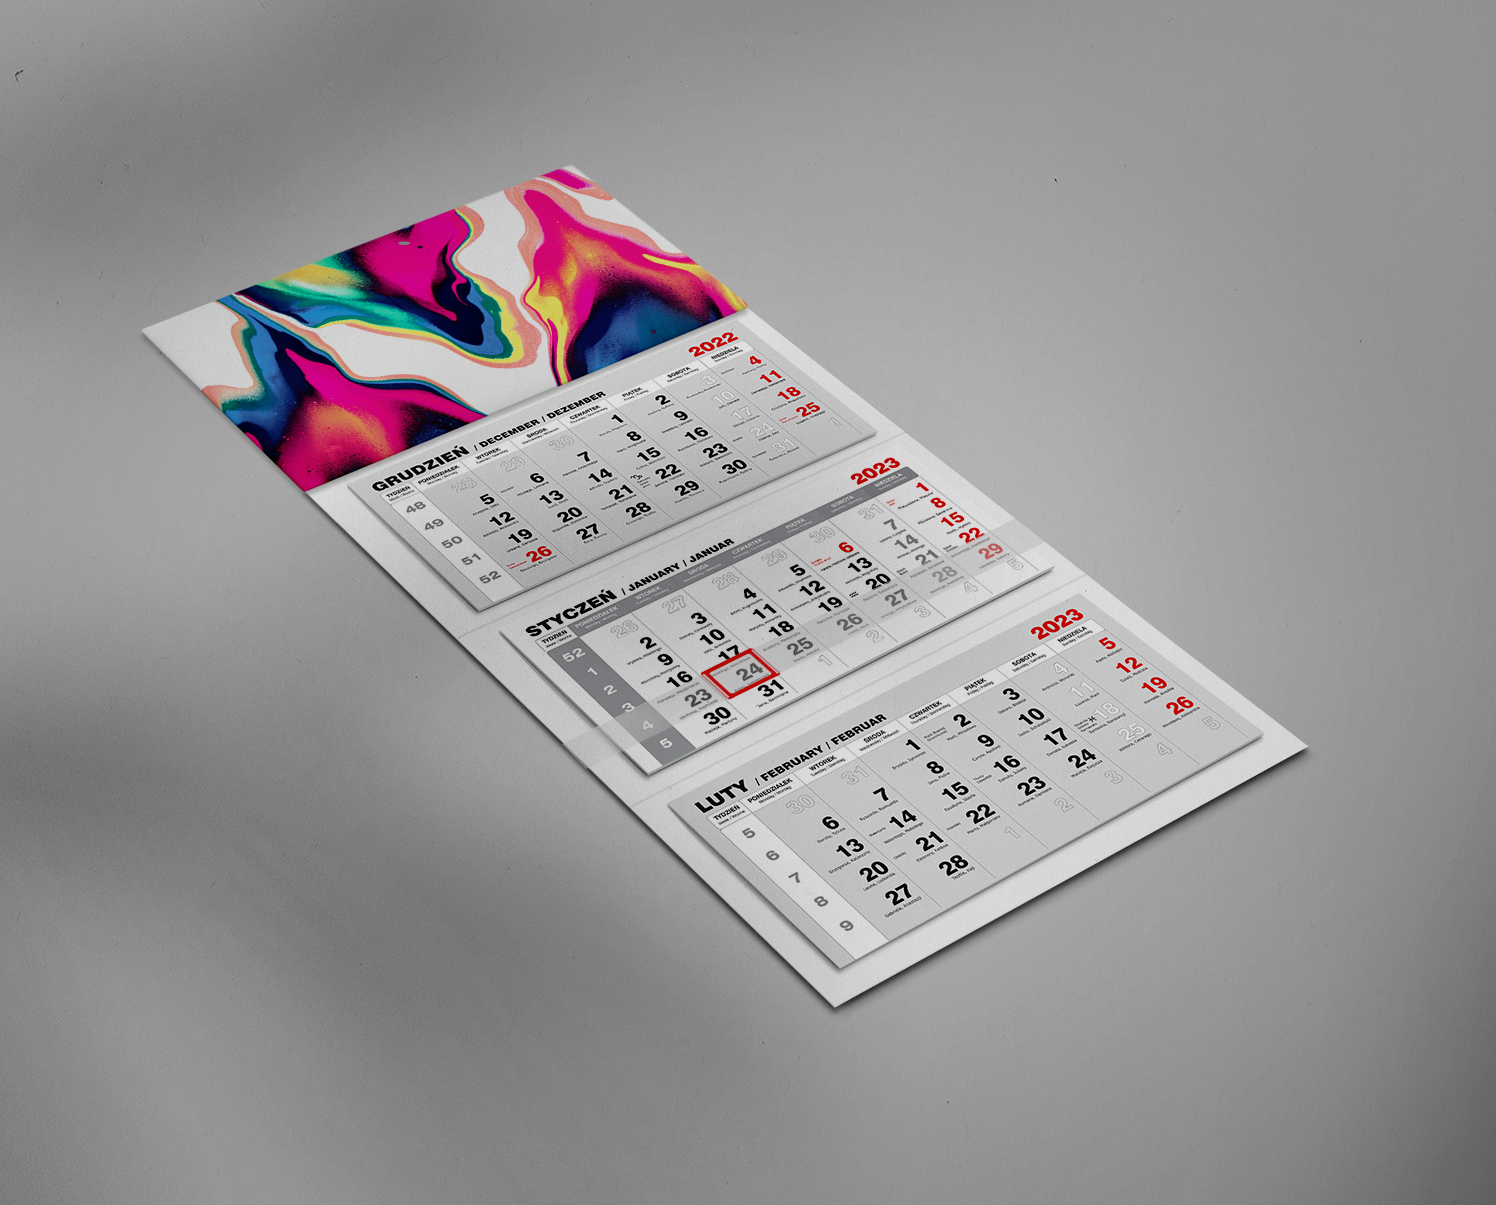 Jak powinien wyglądać kalendarz firmowy? - zdjęcie 